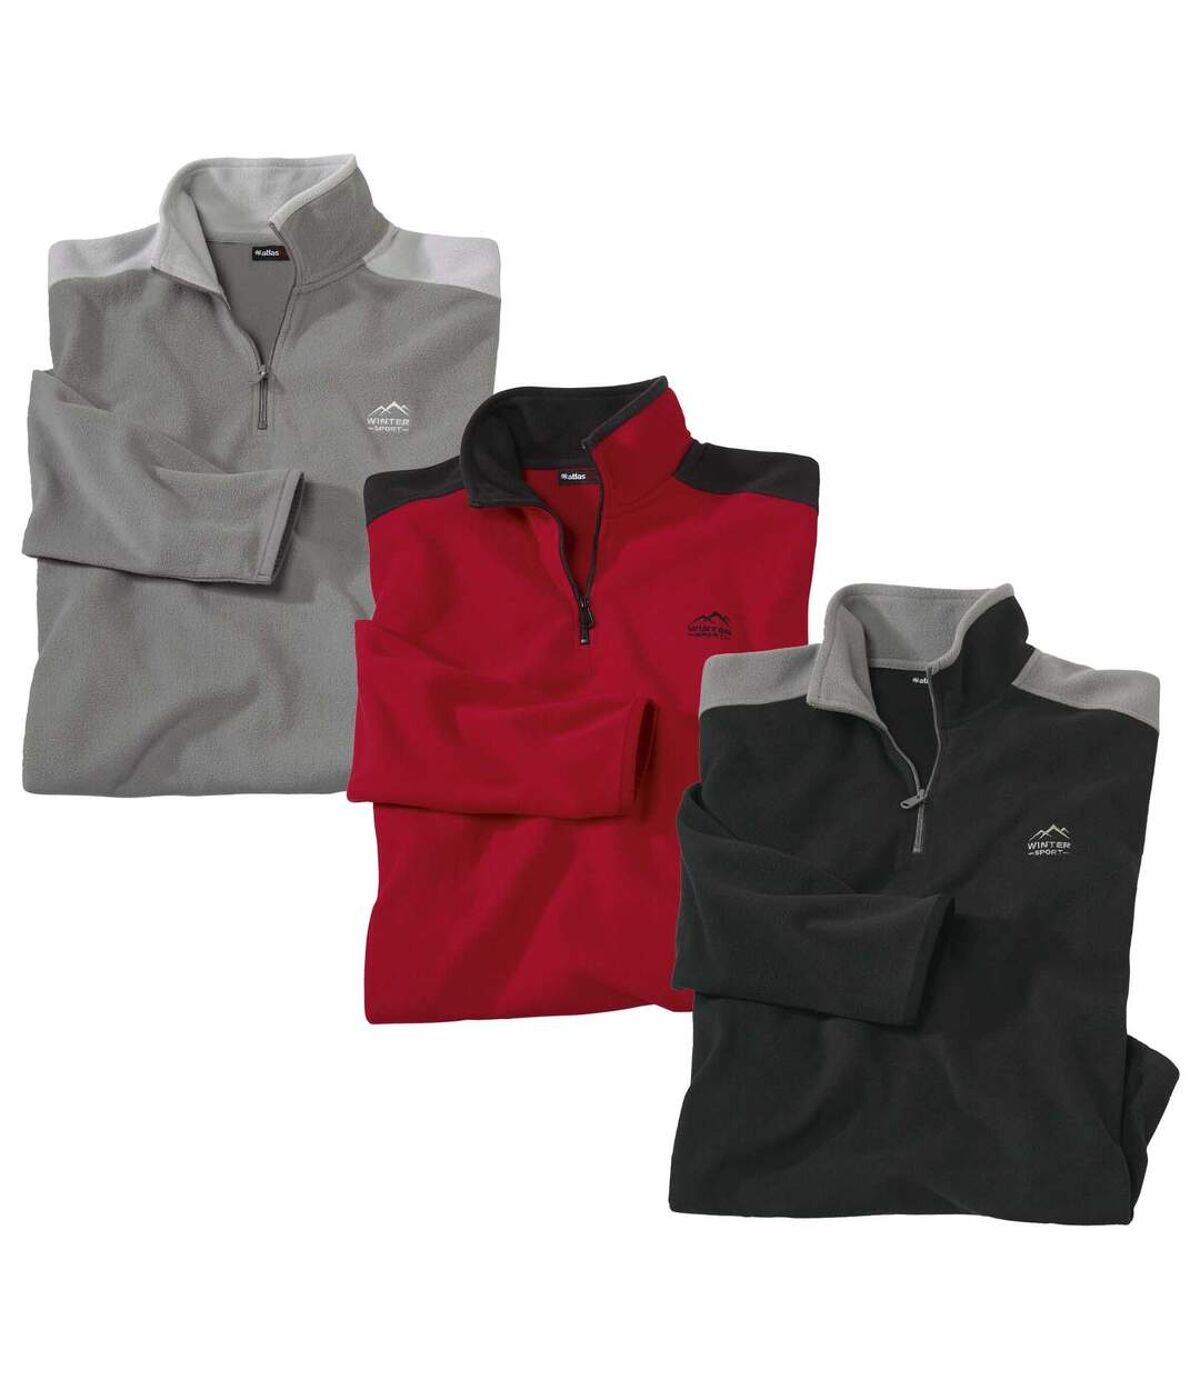 Pack of 3 Men's Half Zip Microfleece Sweaters - Black Red Grey Atlas For Men